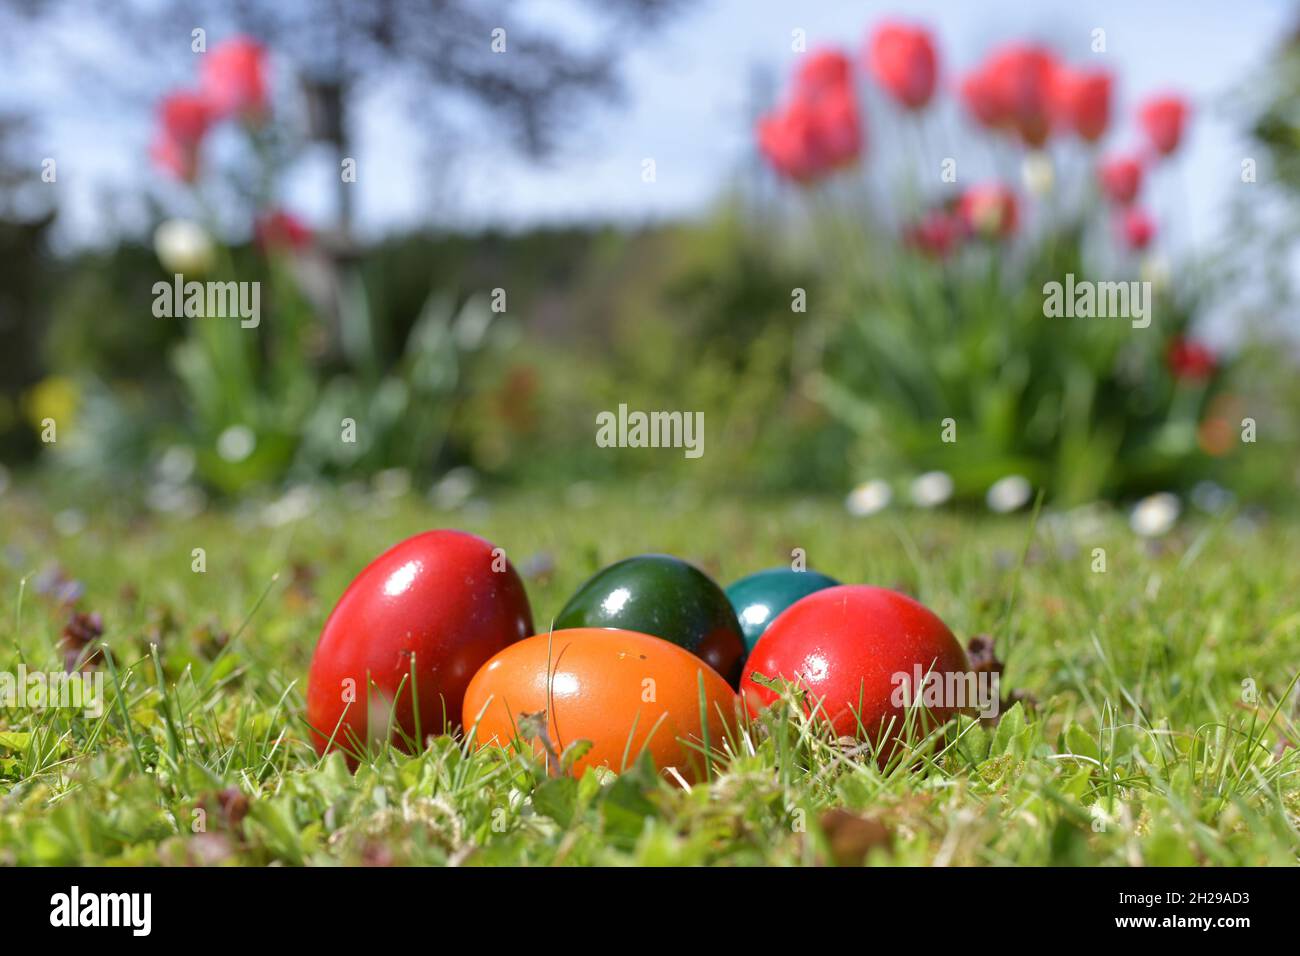 Das Verschenken von Ostereiern ist ein weit verbreiteter Brauch. Die Tradition vom Eierfärben geht bis ins Mittelalter zurück. - Giving away Easter eg Stock Photo